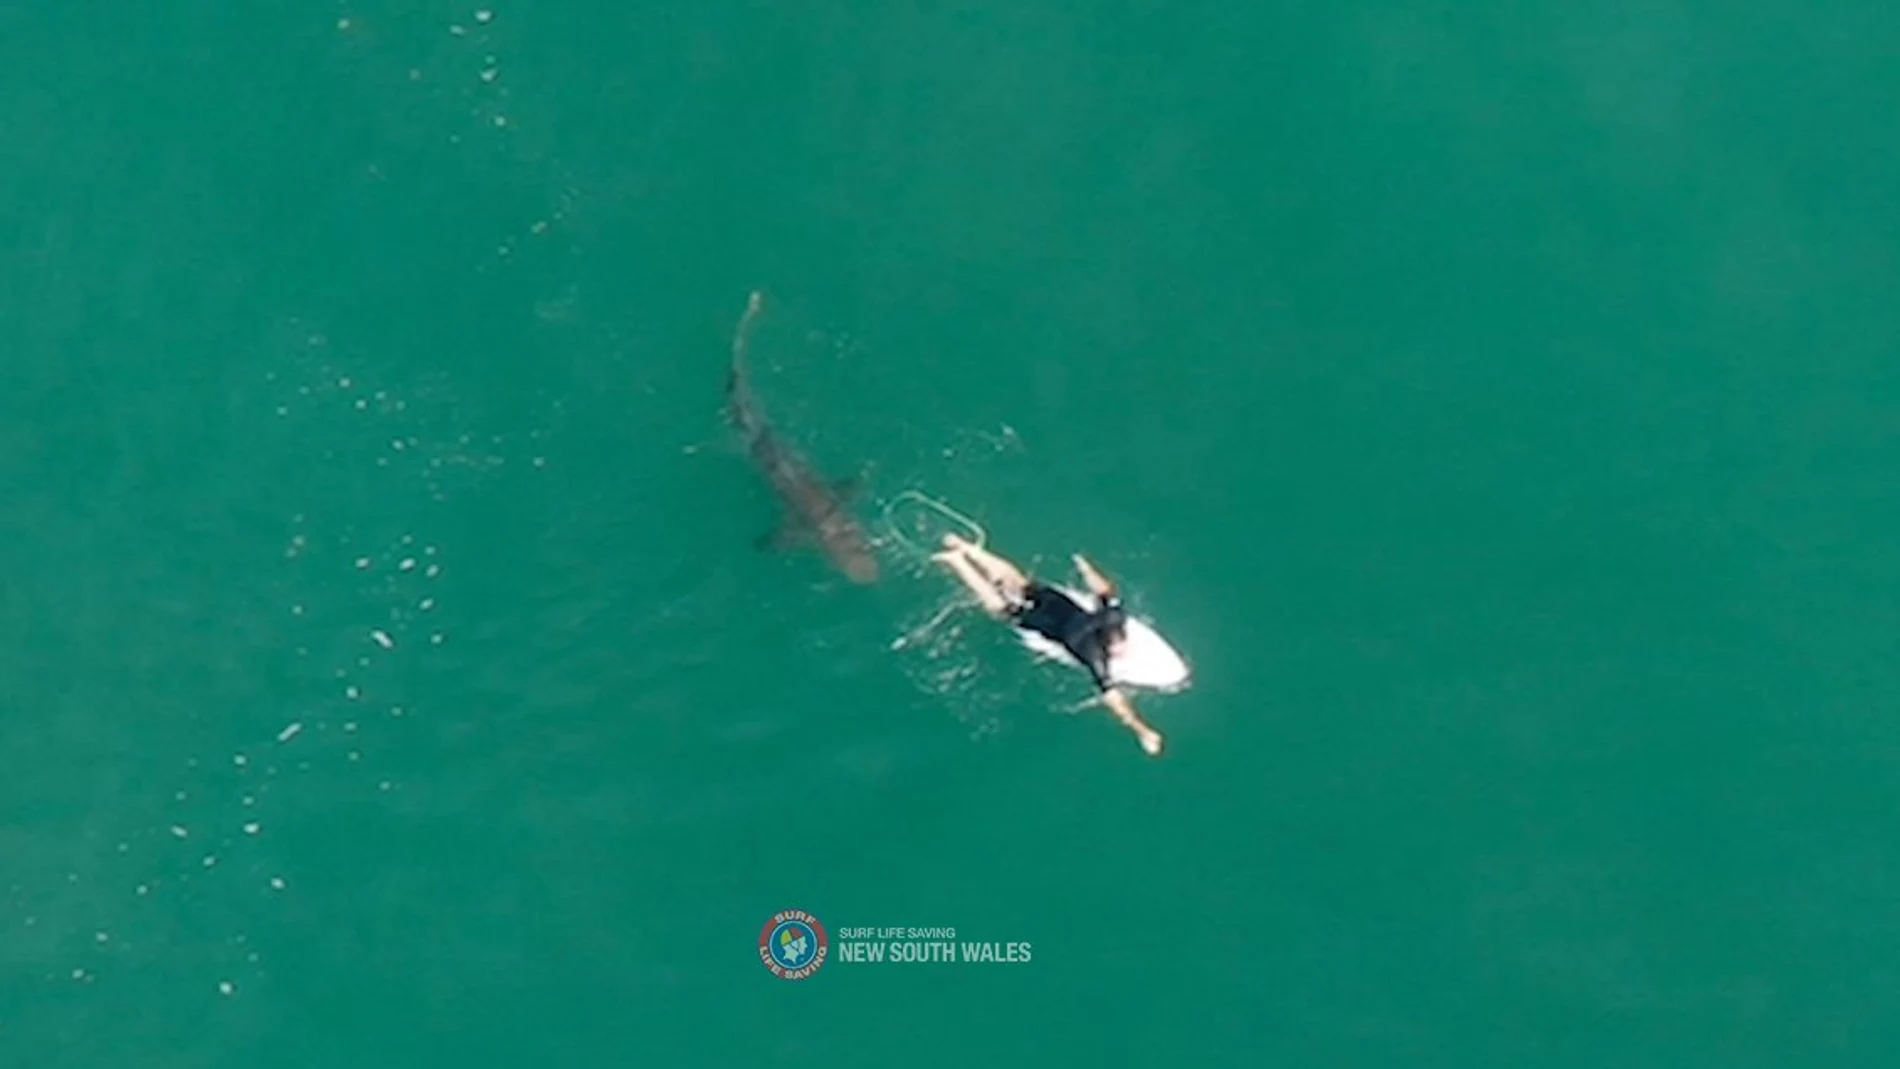 Un tiburón cerca del campeón mundial Matt Wilkinson en Australia